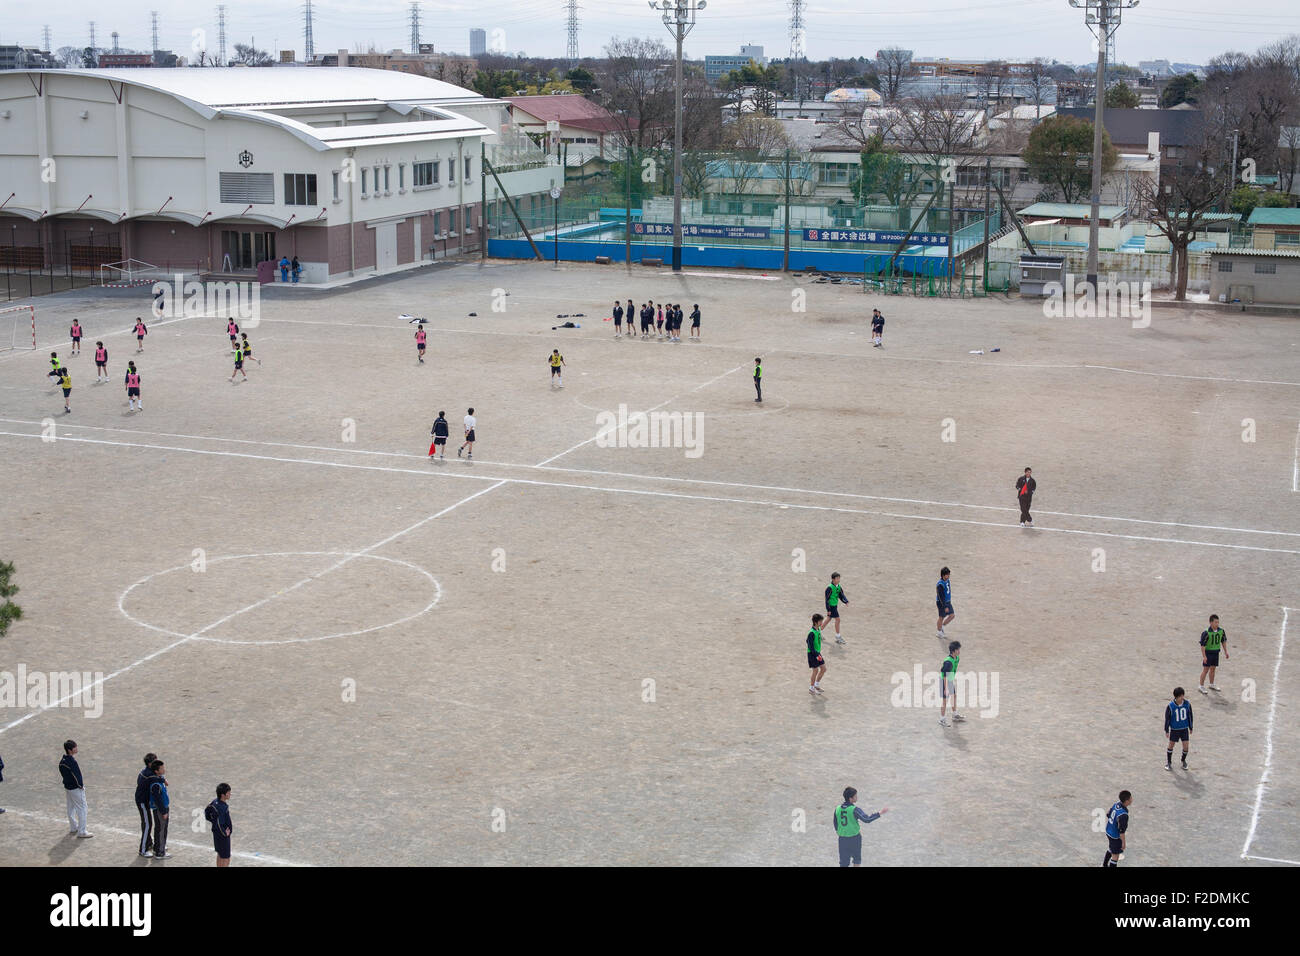 La sporcizia schoolyard con ragazzi che giocano a calcio pov da sopra al centro spazio aperto Foto Stock